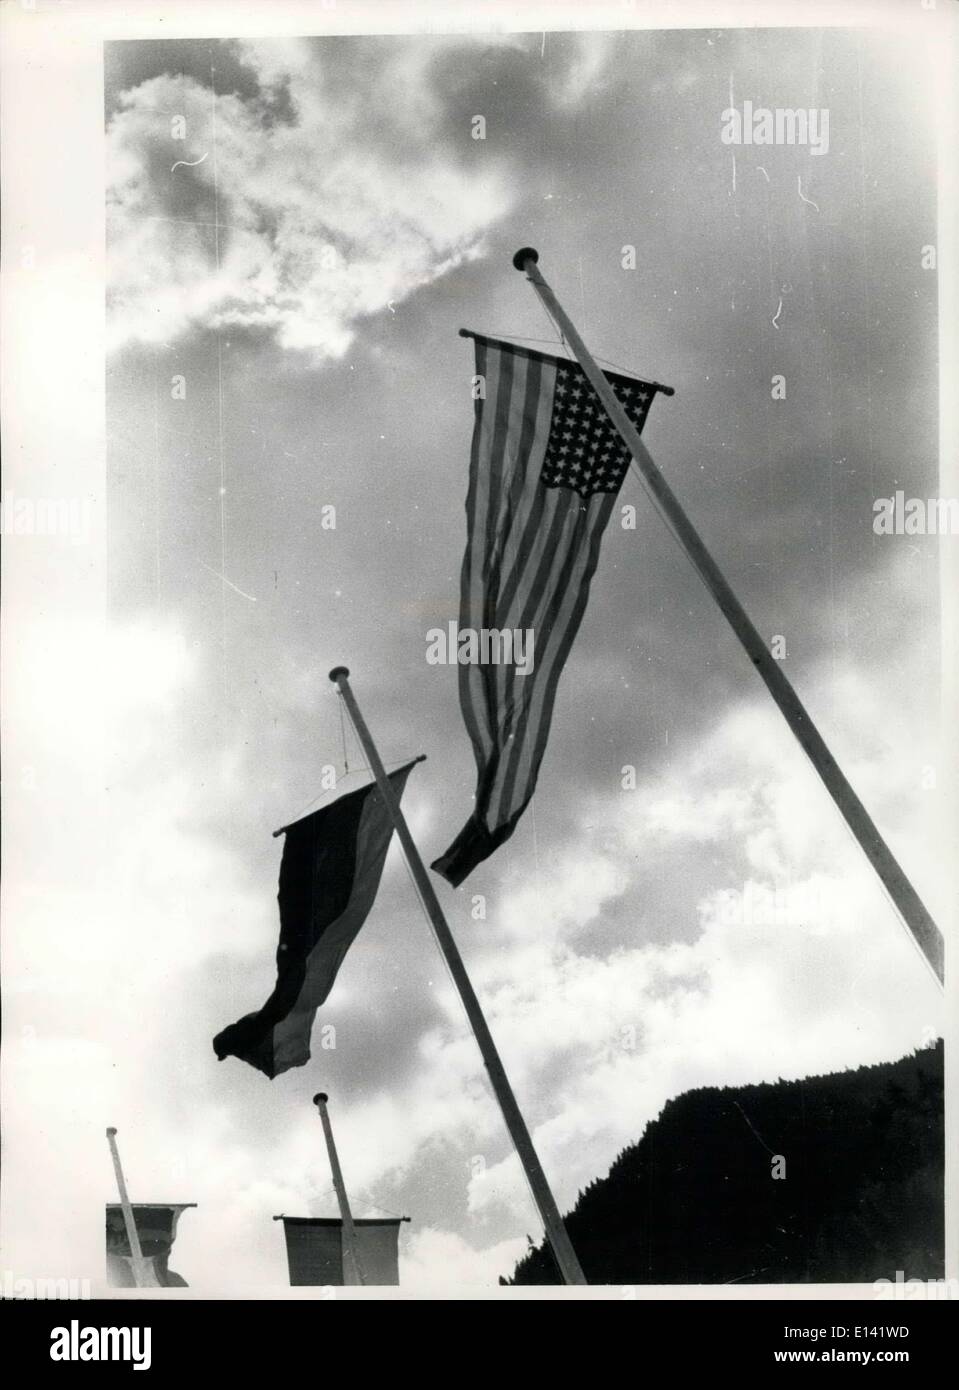 31. März 2012 - German-American Festival der Gewehr-Mann mit Schusswaffen in Garmisch am 12. September und 13., 1953 statt. Zu diesem Zweck die amerikanische Armee zur Verfügung der Gewehr-Mann 10.000 Patronen gestellt. Alle Arten von Gewehren waren da, auch diese, die seit dem Ende des Krieges versteckt wurden. Sie drehten sich in einer Entfernung von 130 m. Freihand-schießen auf Ziele, Miniatur-Luftgewehrschießen und Pistolen, sondern auch Tontaubenschießen. Vertreter der wissen gut bayerische Gewehr-Mann Clubs, amerikanische Offiziere und GI Stockfoto